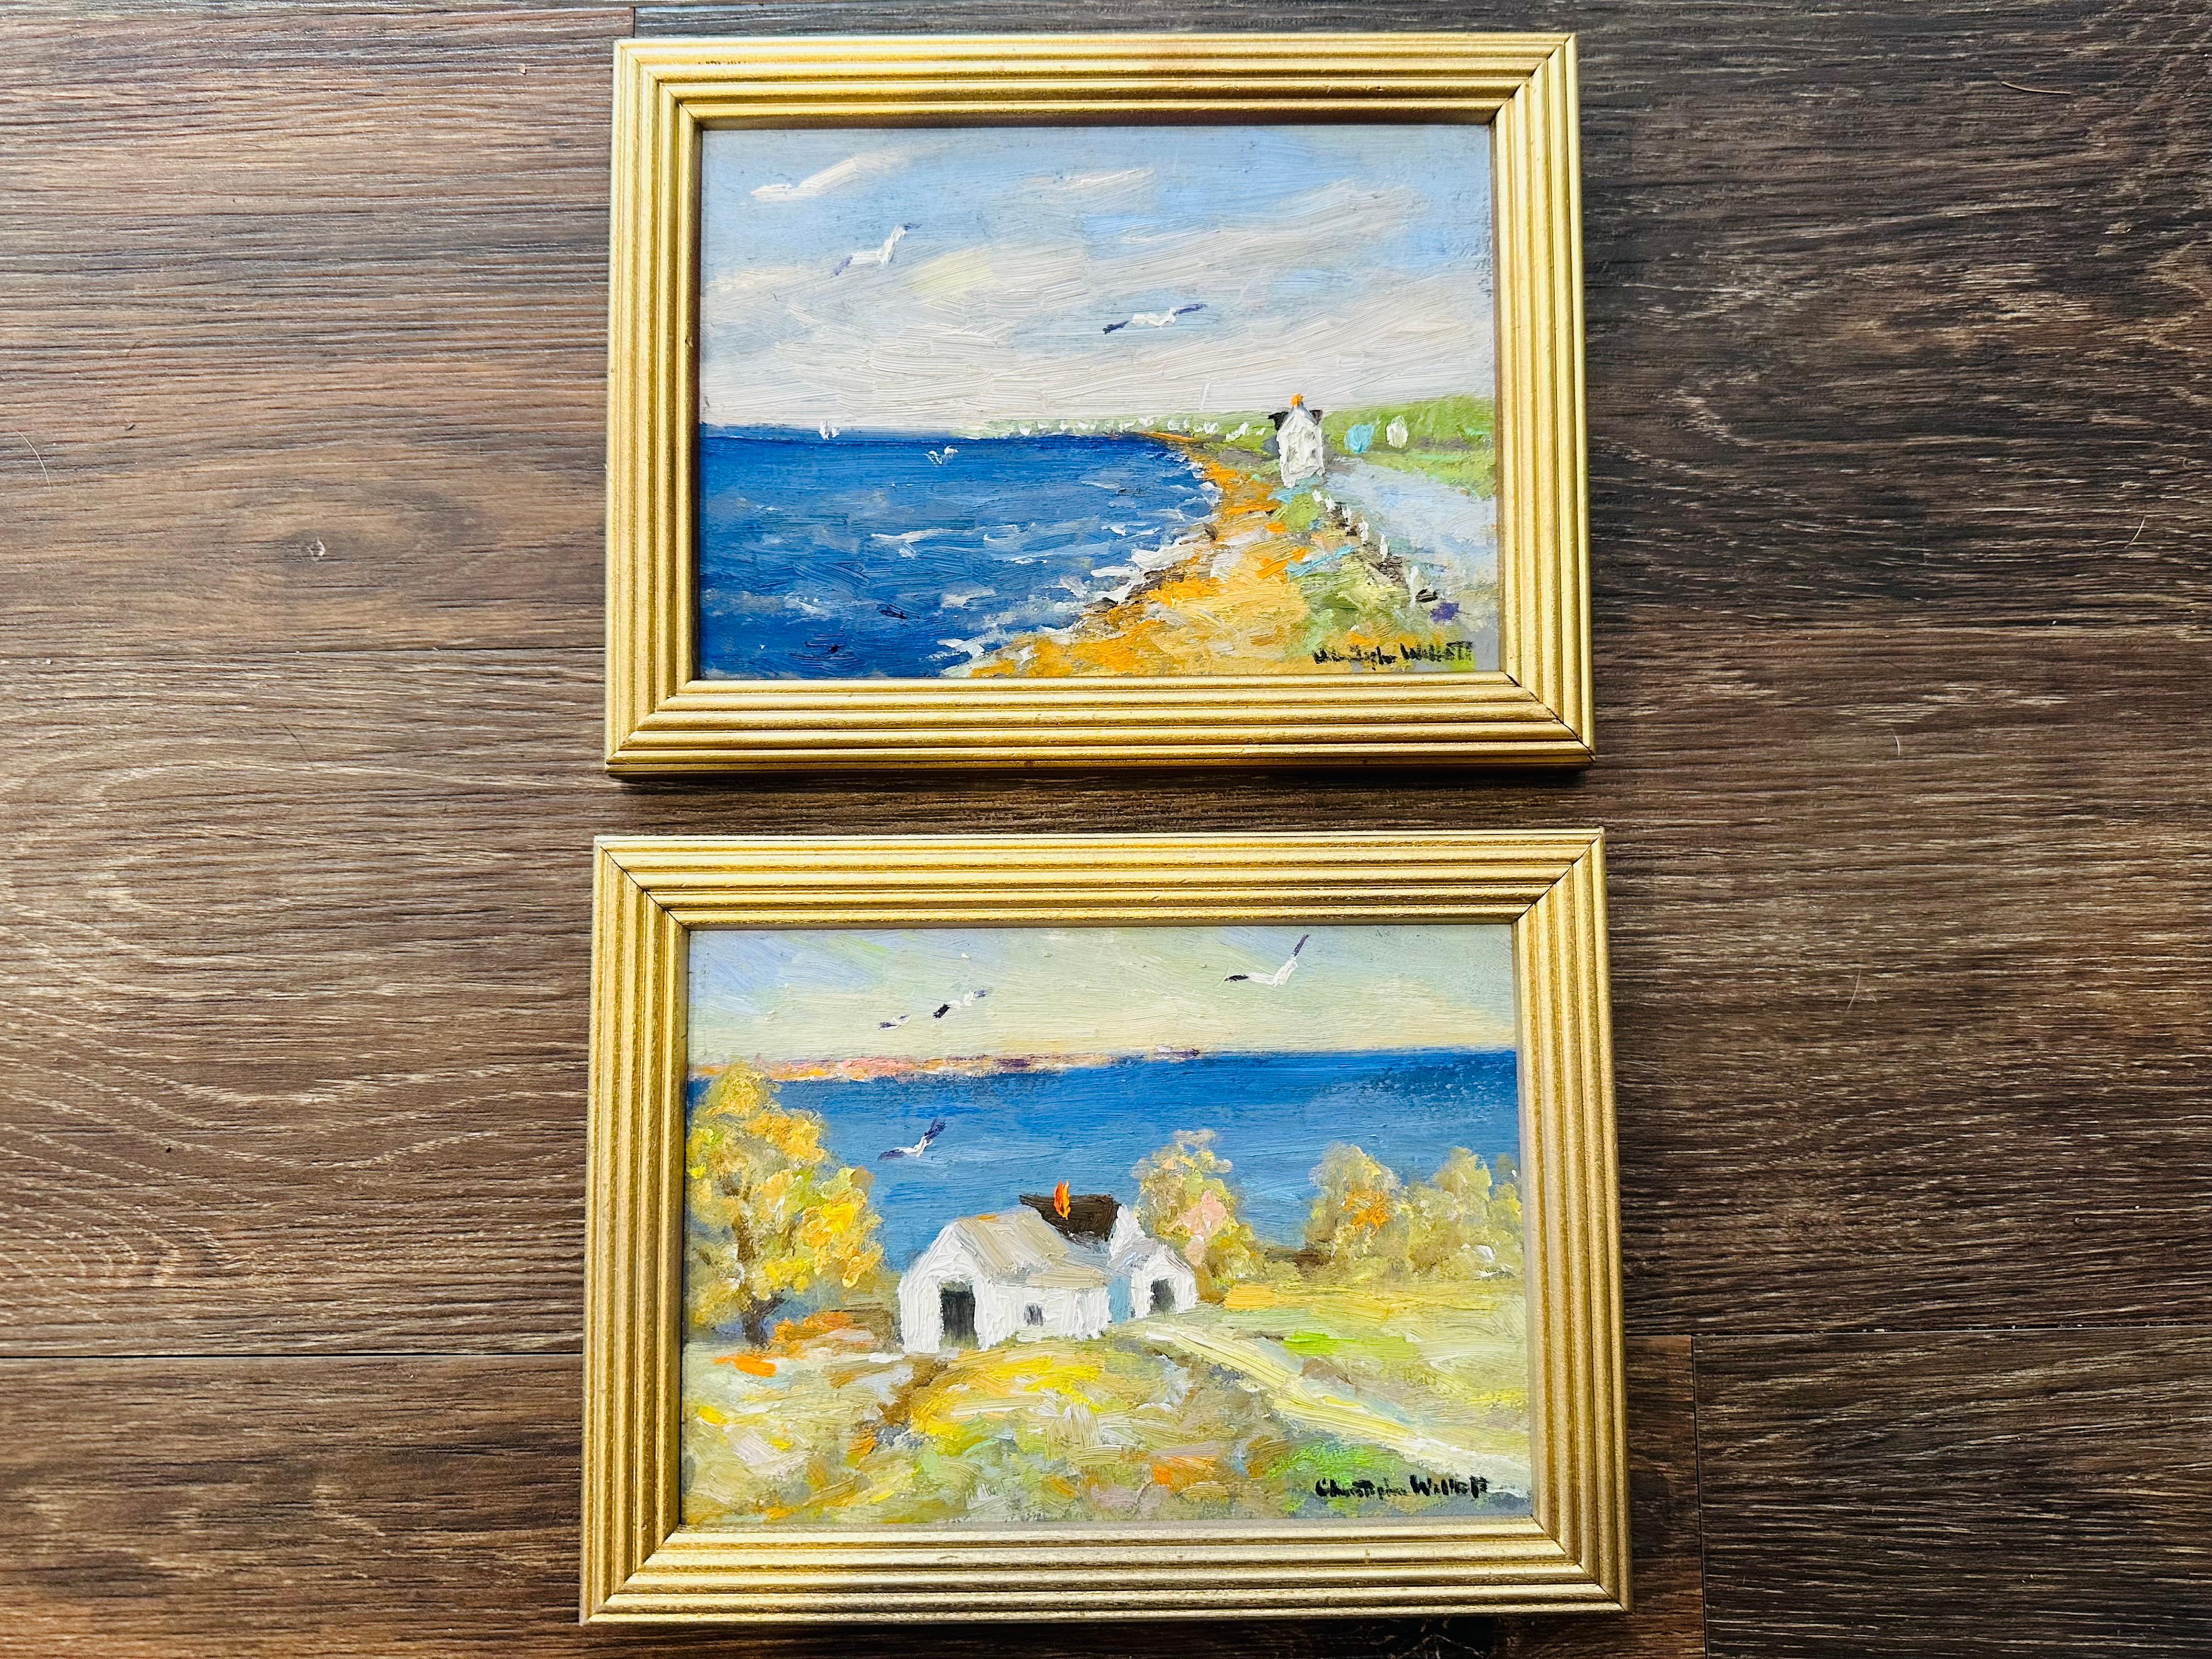 Impressionist Provincetown Massachusetts - Ein glücklicher Sommernachmittag in Provincetown. Möwen, die über dem Hügelhaus aufsteigen. Ein malerisches weißes Haus mit Blick auf den Strand und das Rauschen der Wellen. Genießen Sie zwei verschiedene